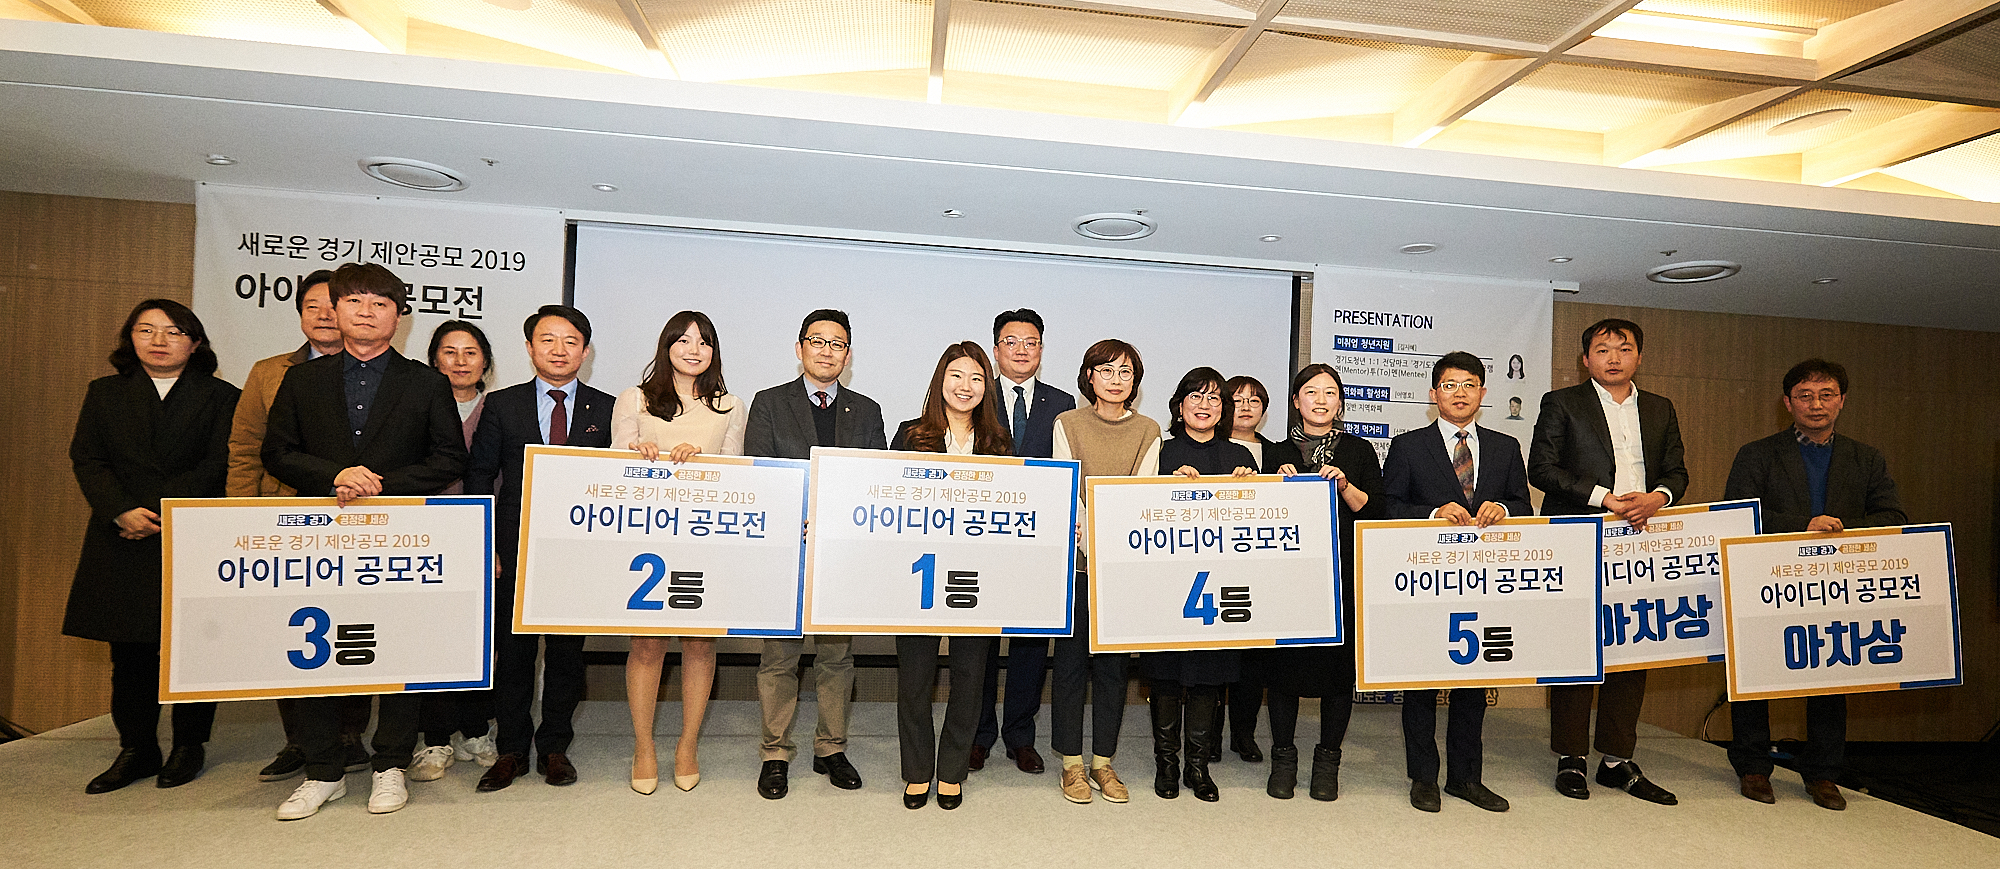 ‘새로운 경기제안공모 2019 아이디어 공모전 본선대회’에선 김지혜 씨의 중소기업 좋은 일자리 발굴사업 ‘청년발굴단’이 영예의 1등을 수상했다.